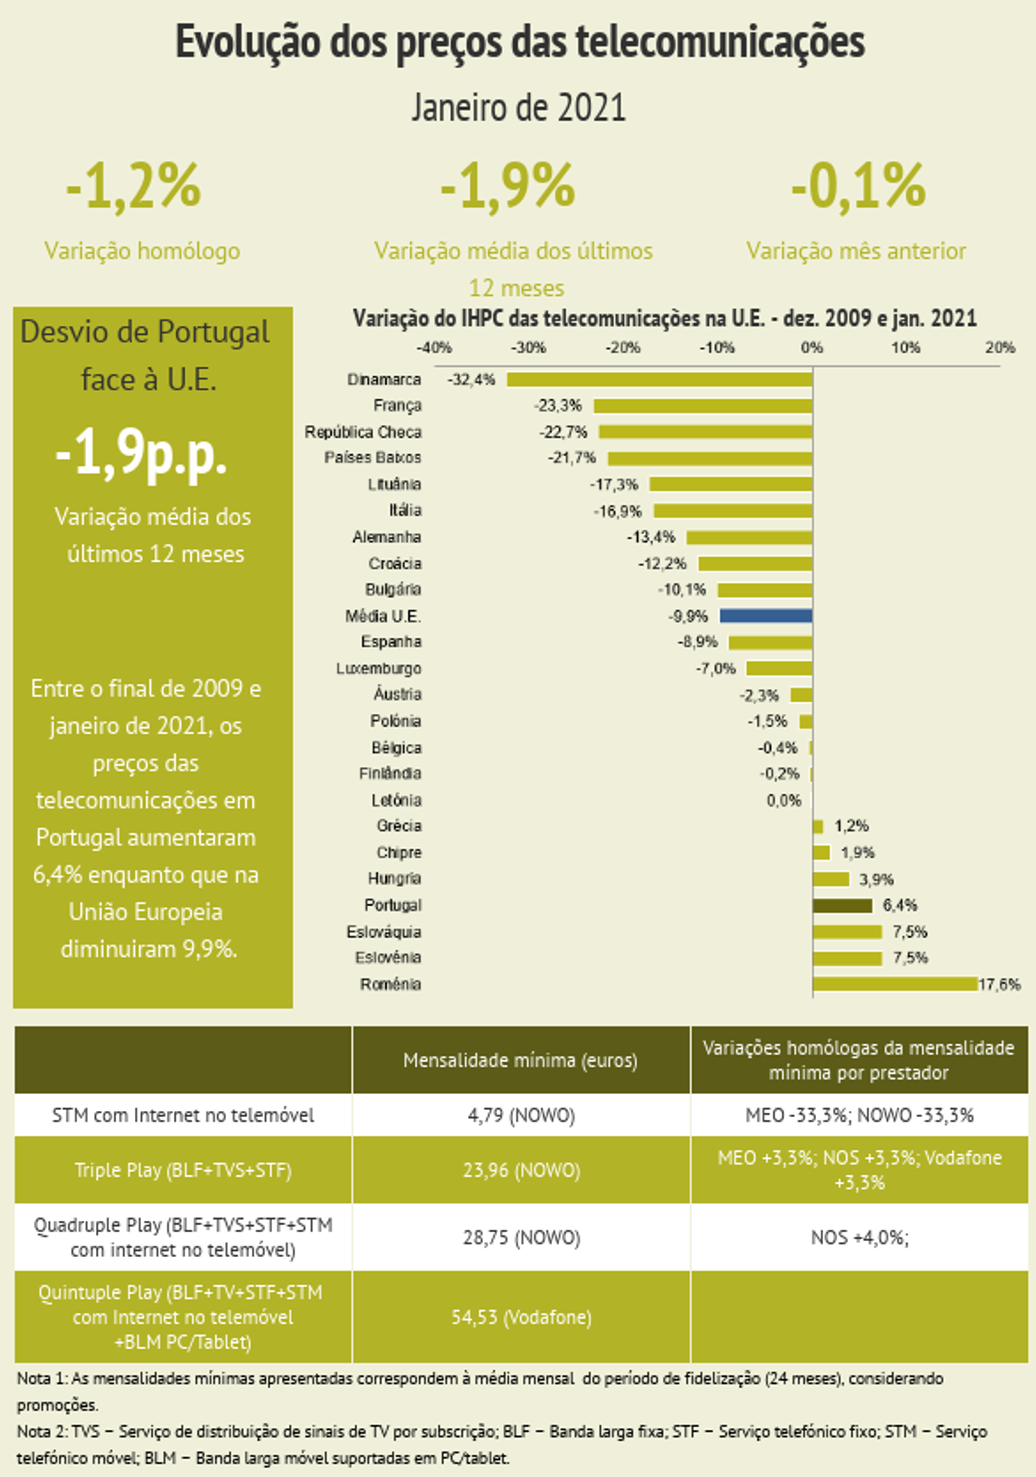 ANACOM: Preço das telecomunicações em Portugal aumentaram 6,4%